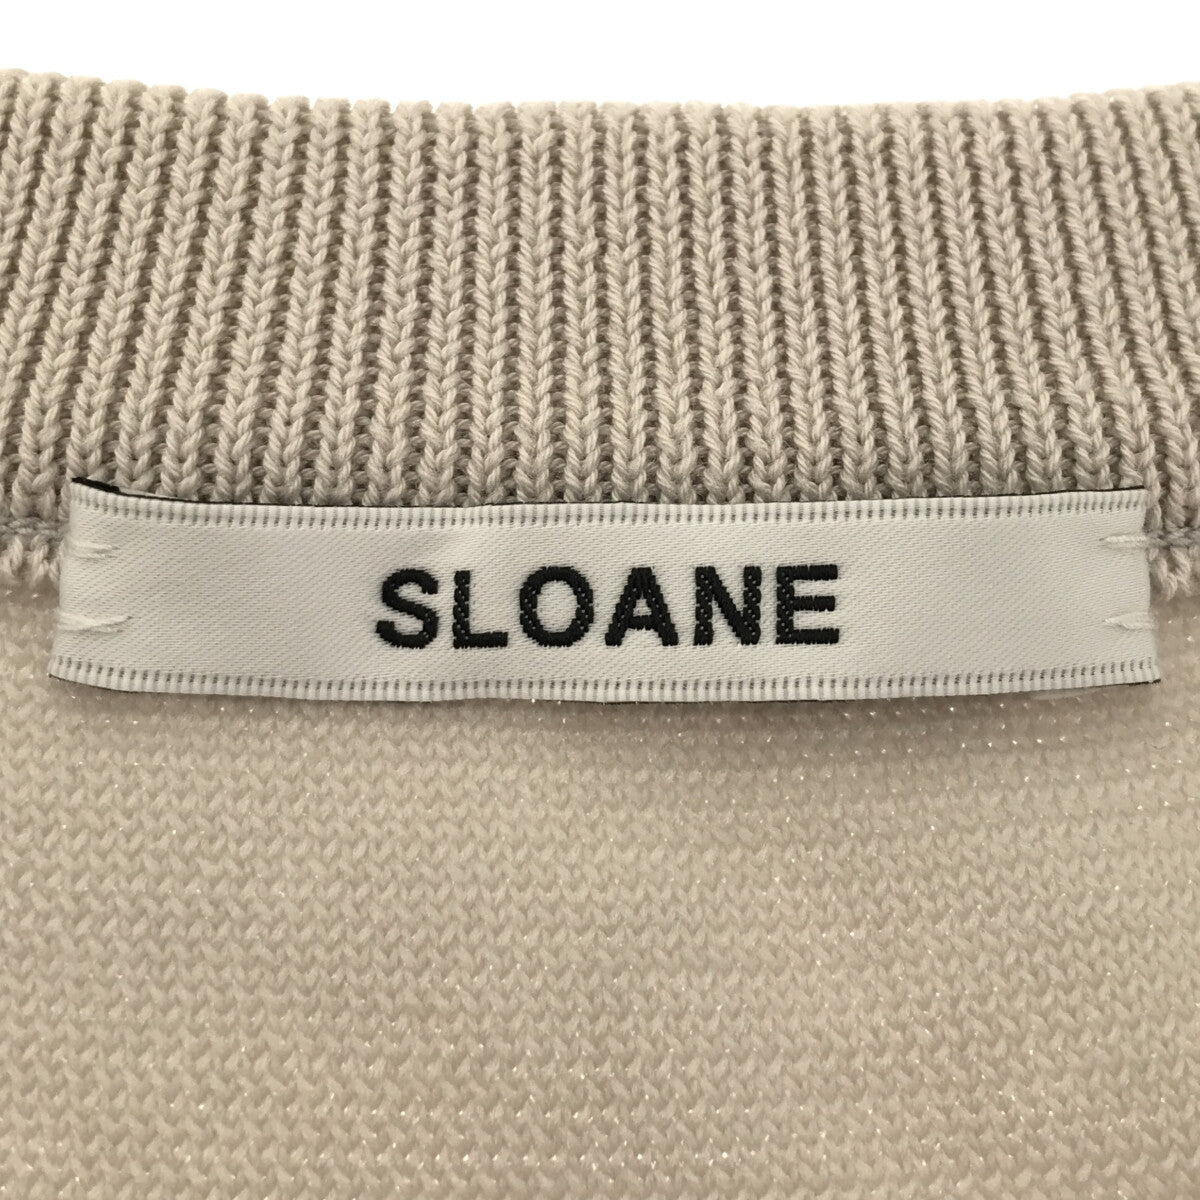 SLOANE / スローン | コットン クルーネック リブ ニット プルオーバー | 1 |